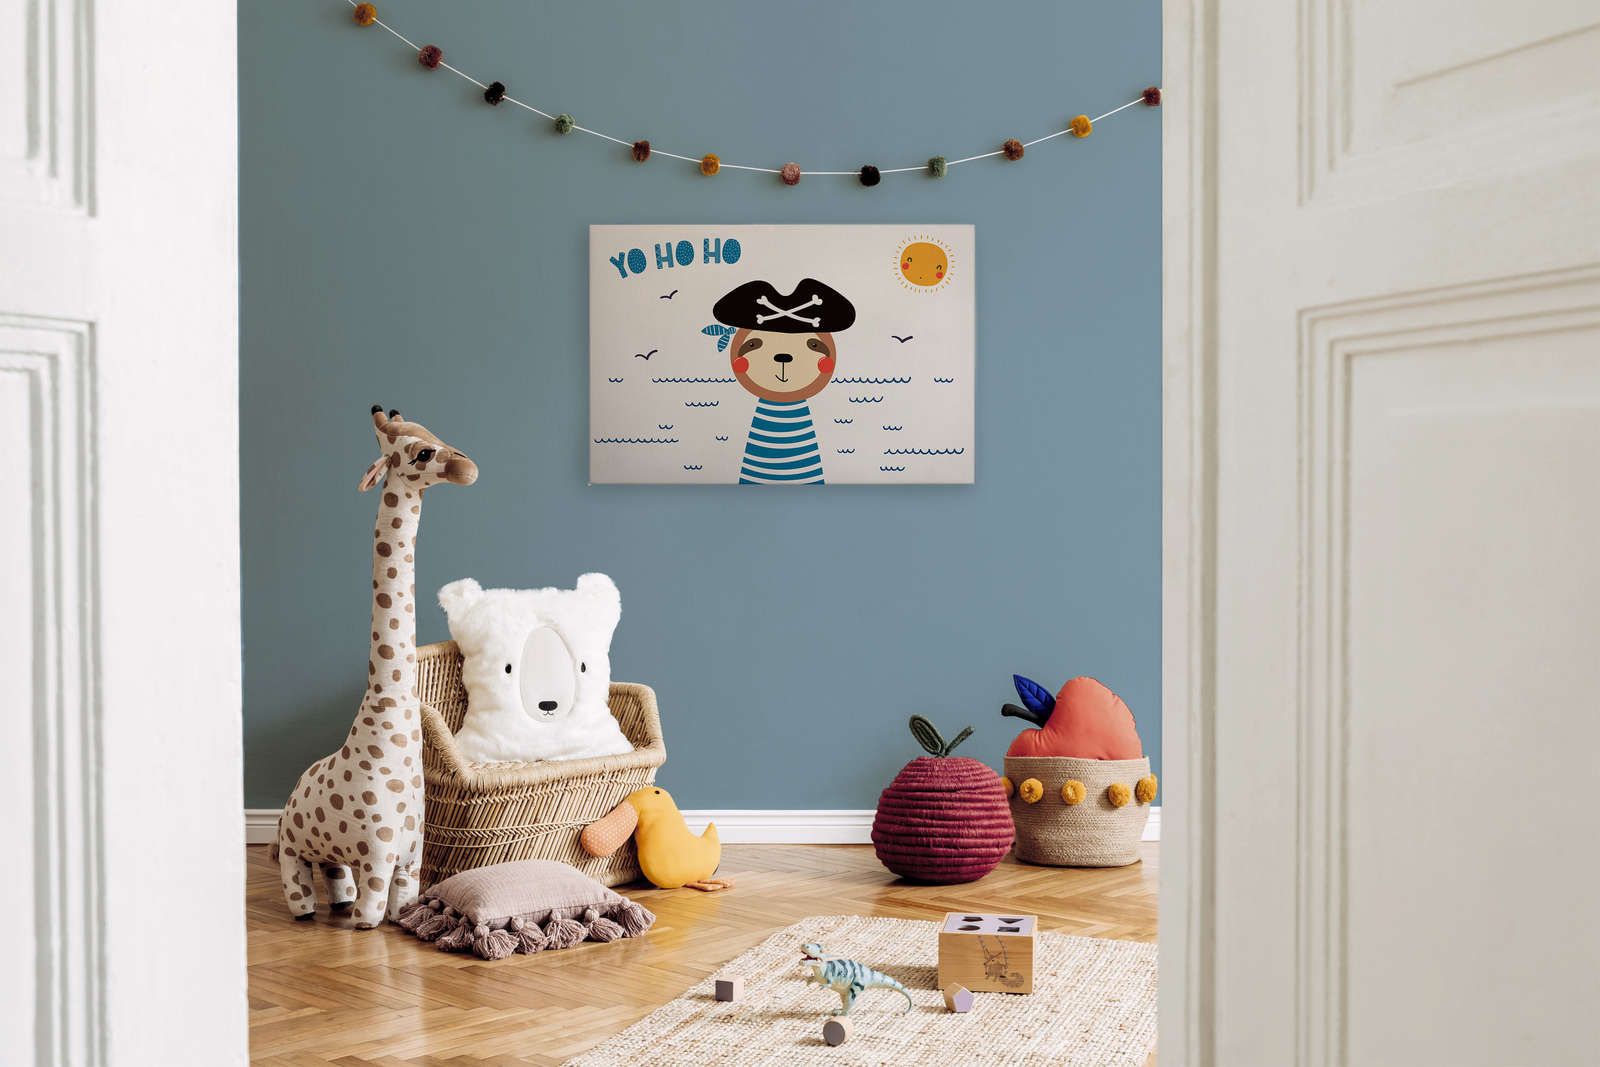             Leinwand fürs Kinderzimmer mit Bären-Pirat – 90 cm x 60 cm
        